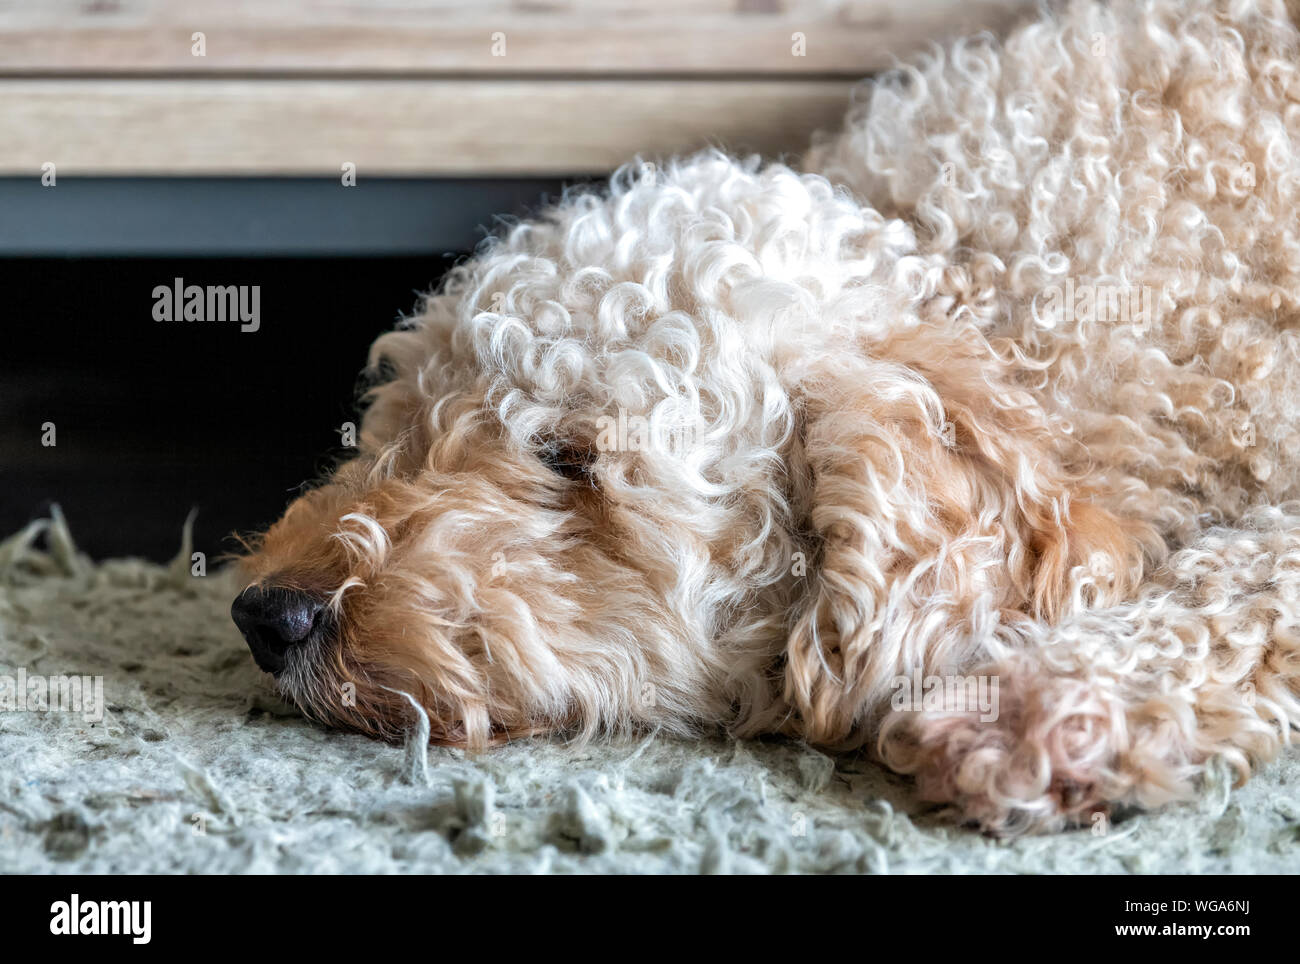 Lindo y peludo perro Labradoodle dormido con su cabeza apoyada sobre una alfombra Foto de stock